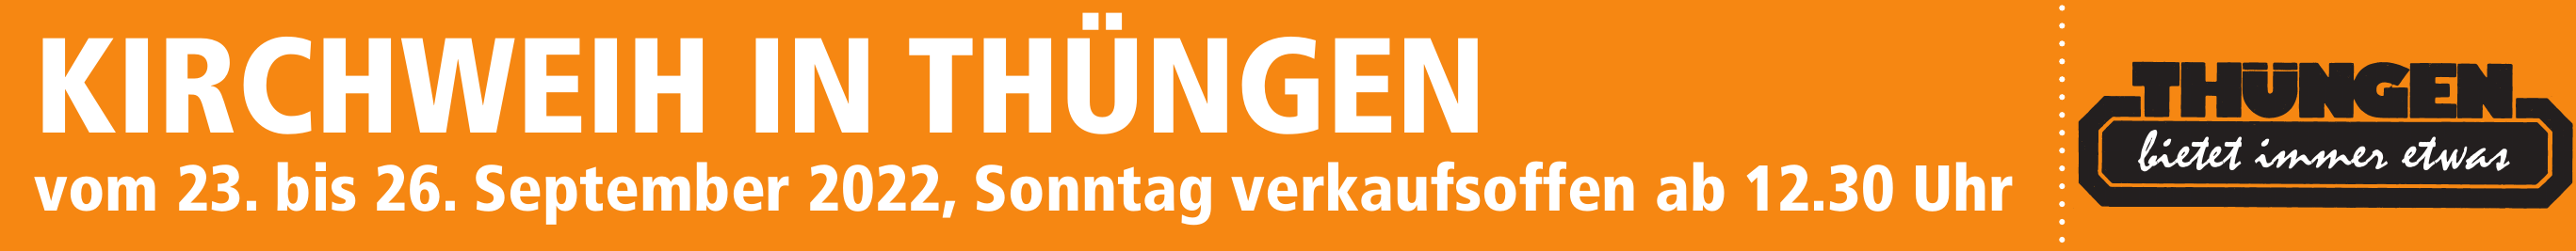 Kirchweih in Thüngen vom 23. bis 26. September 2022, Sonntag verkaufsoffen ab 12.30 Uhr Image 1